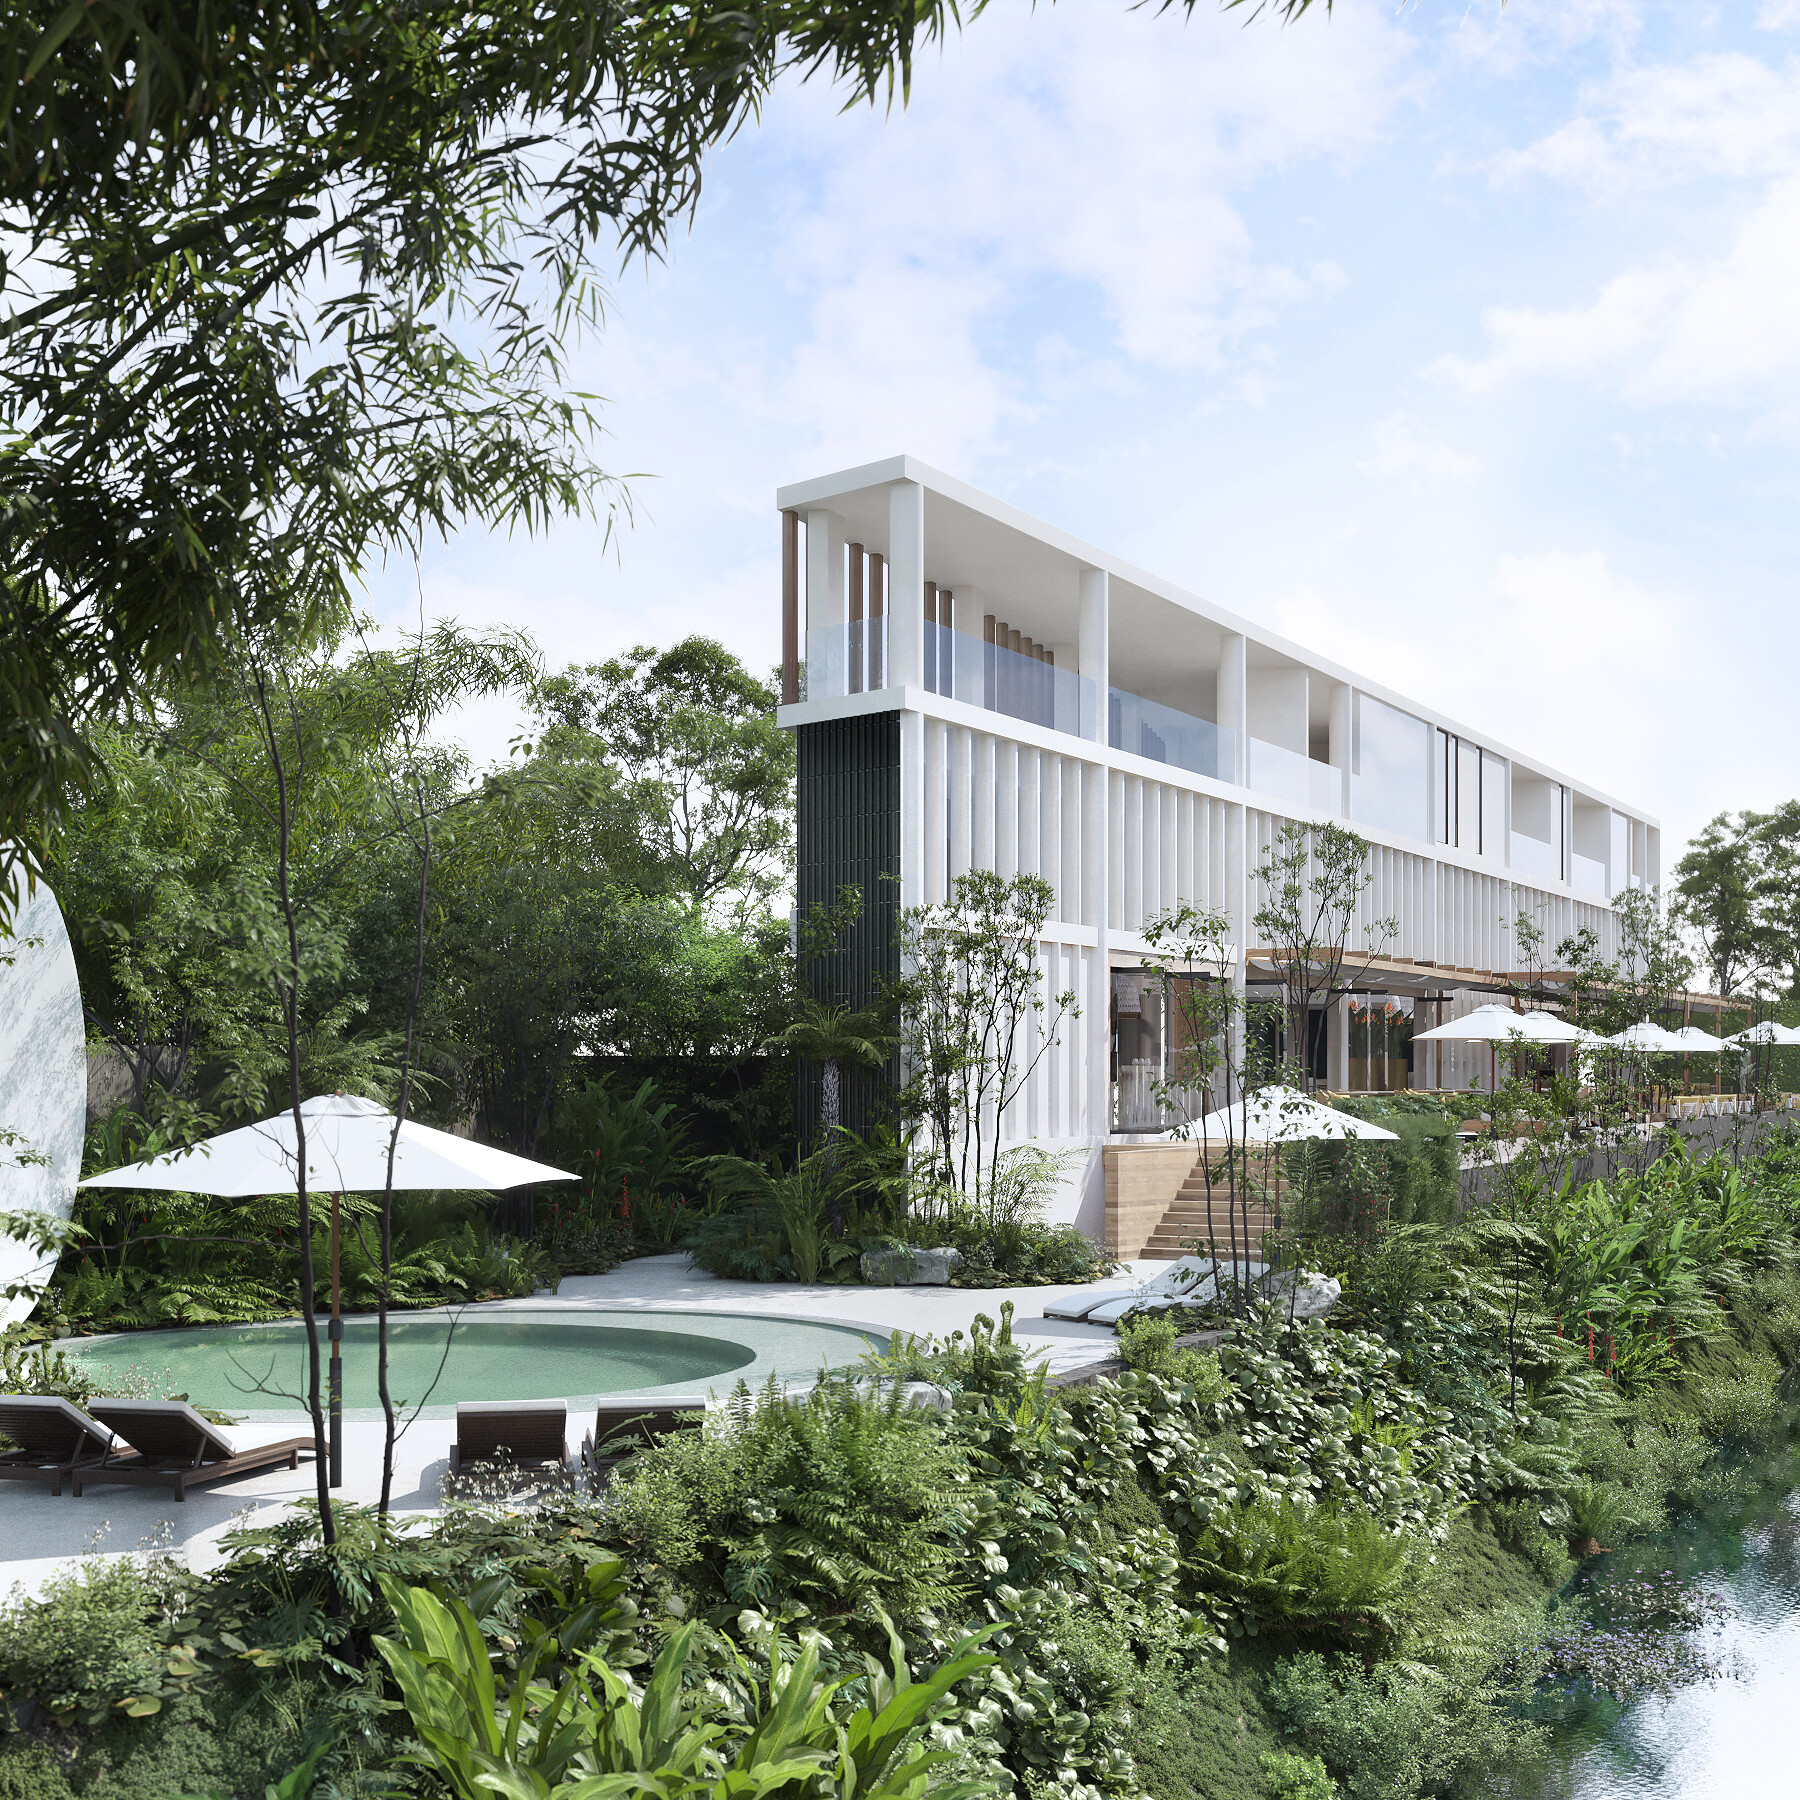 "ออสโม่ พร็อพเพอร์ตี้ส์ กรุ๊ป" ส่ง ออสโม่ พิงค์ ริเวอร์  ในเครือ ลงนามแต่งตั้งการบริหาร โรงแรม NH Collection Chiang Mai Ping River ริมแม่น้ำปิง จังหวัดเชียงใหม่  ร่วมกับ  "ไมเนอร์ โฮเทลส์"